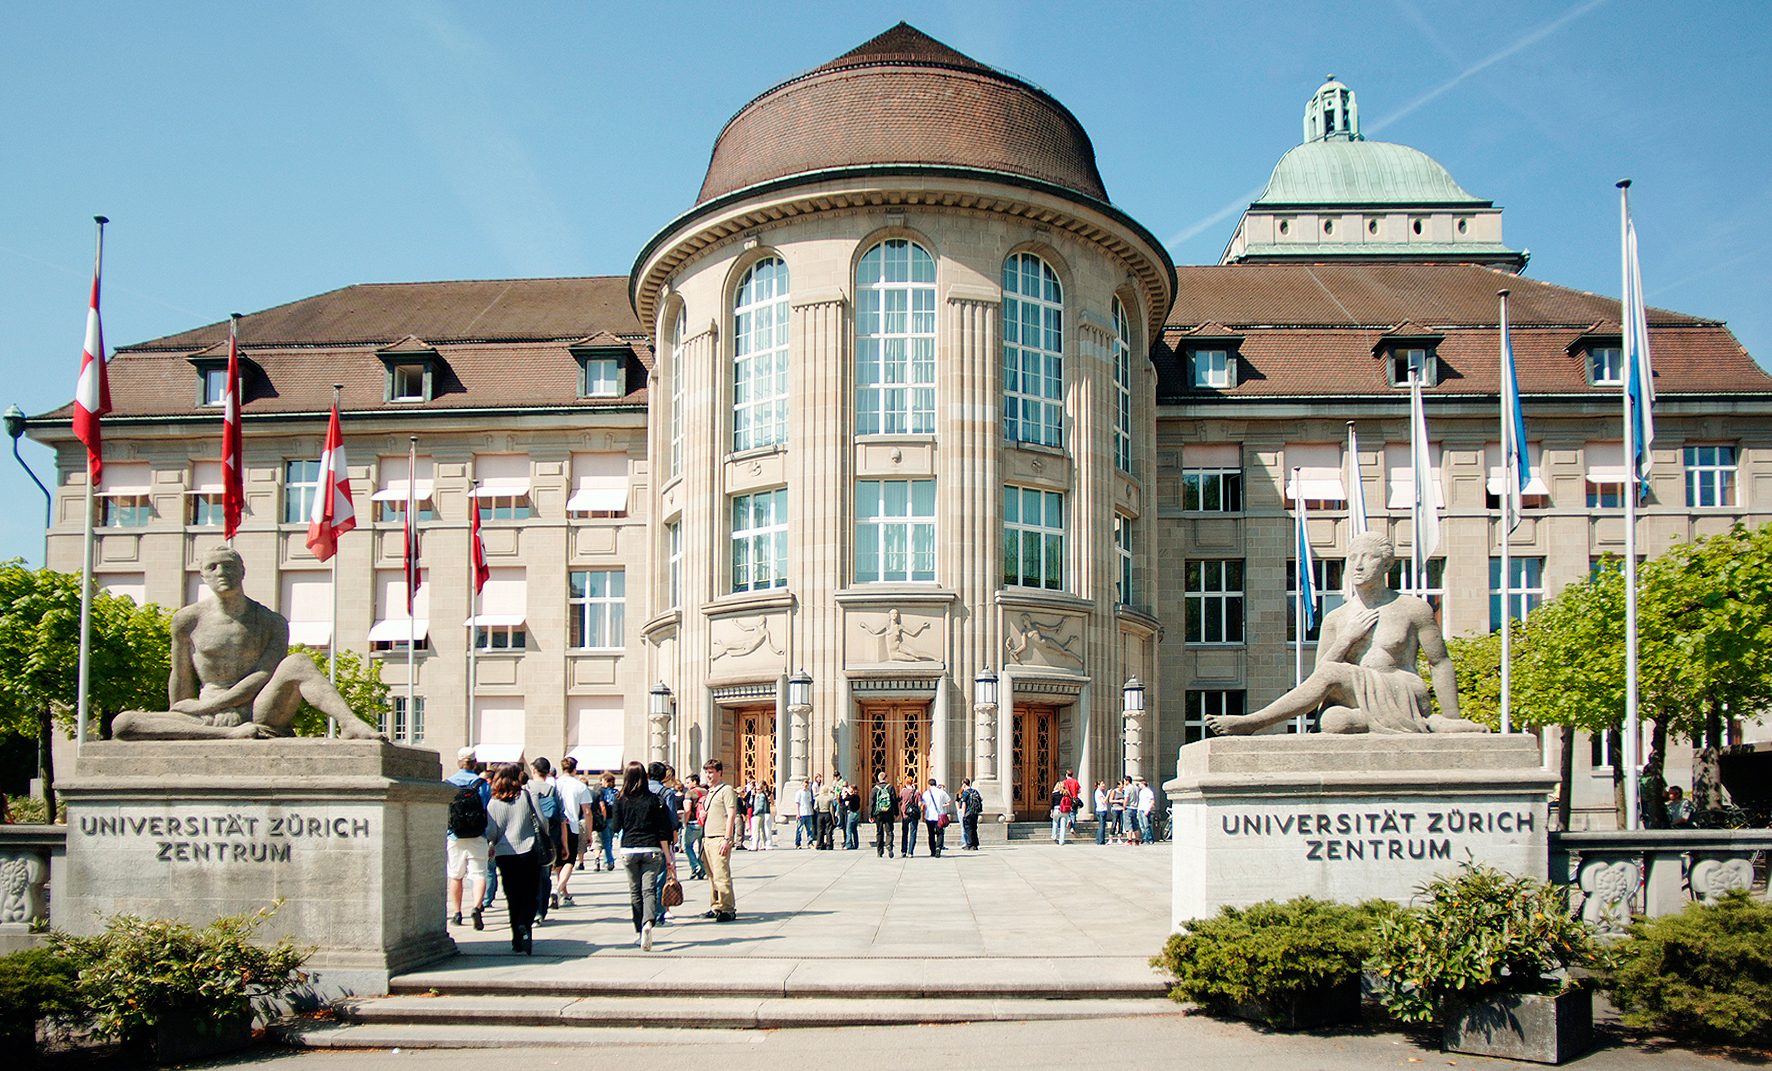 University of Zurich: : TOP 10 UNIVERSITIES IN SWITZERLAND